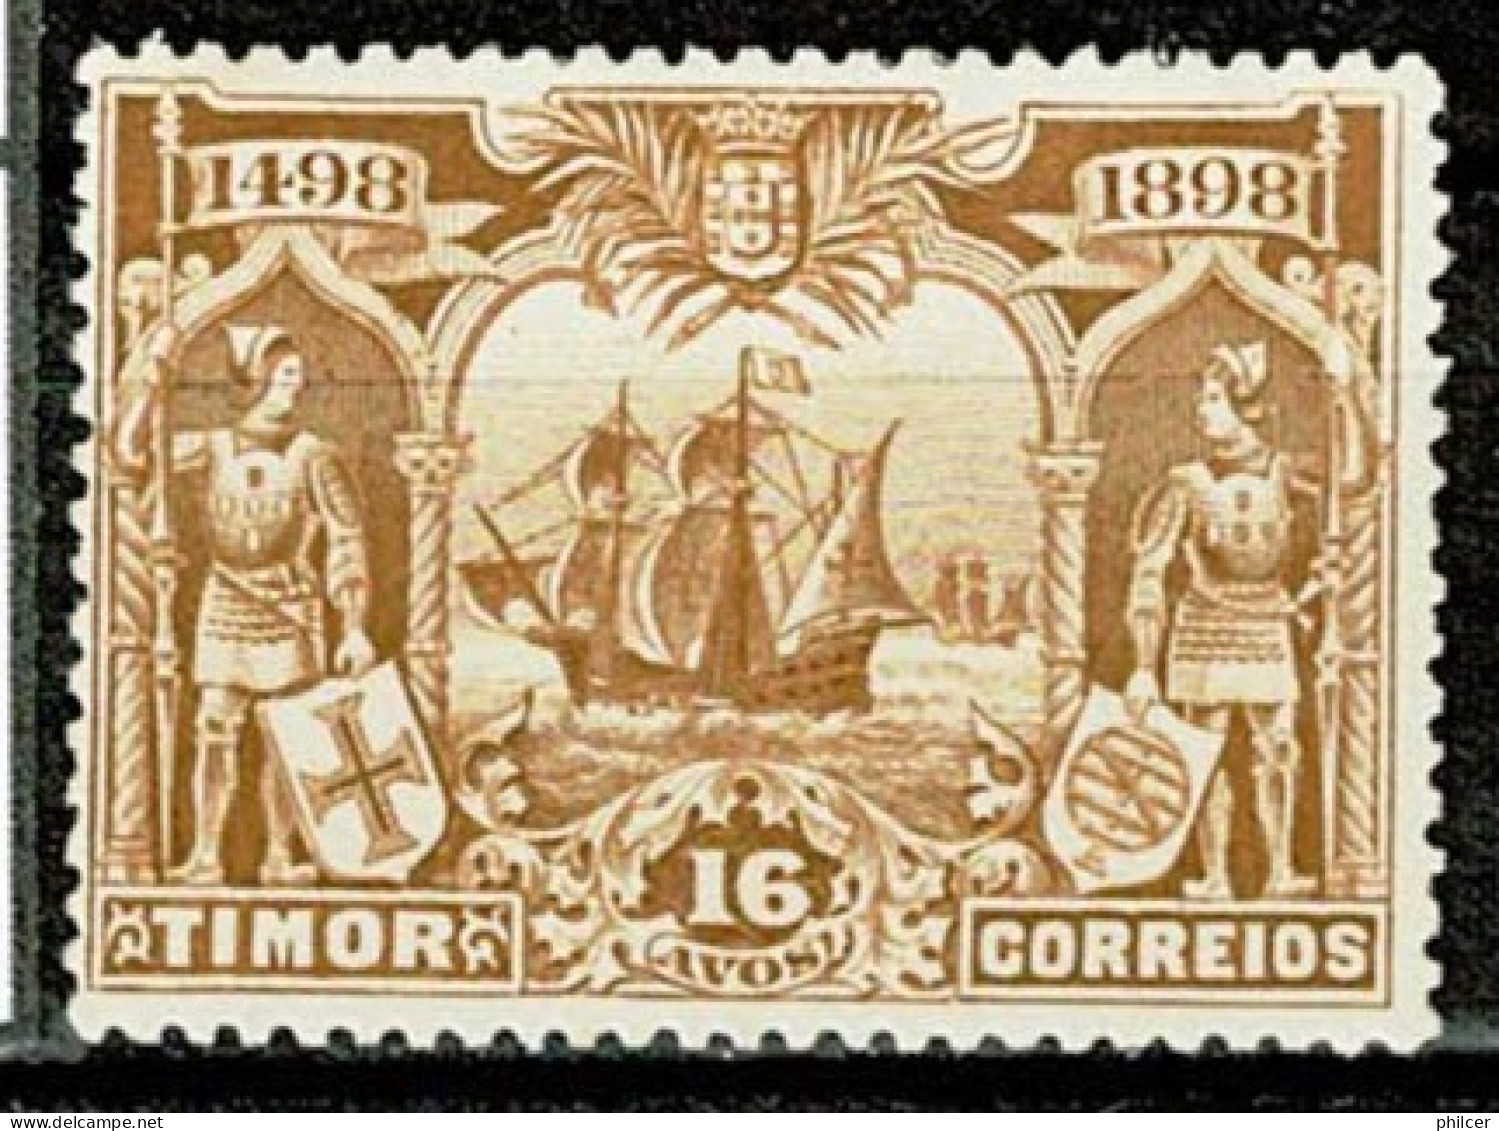 Timor, 1898, # 56, MH - Timor